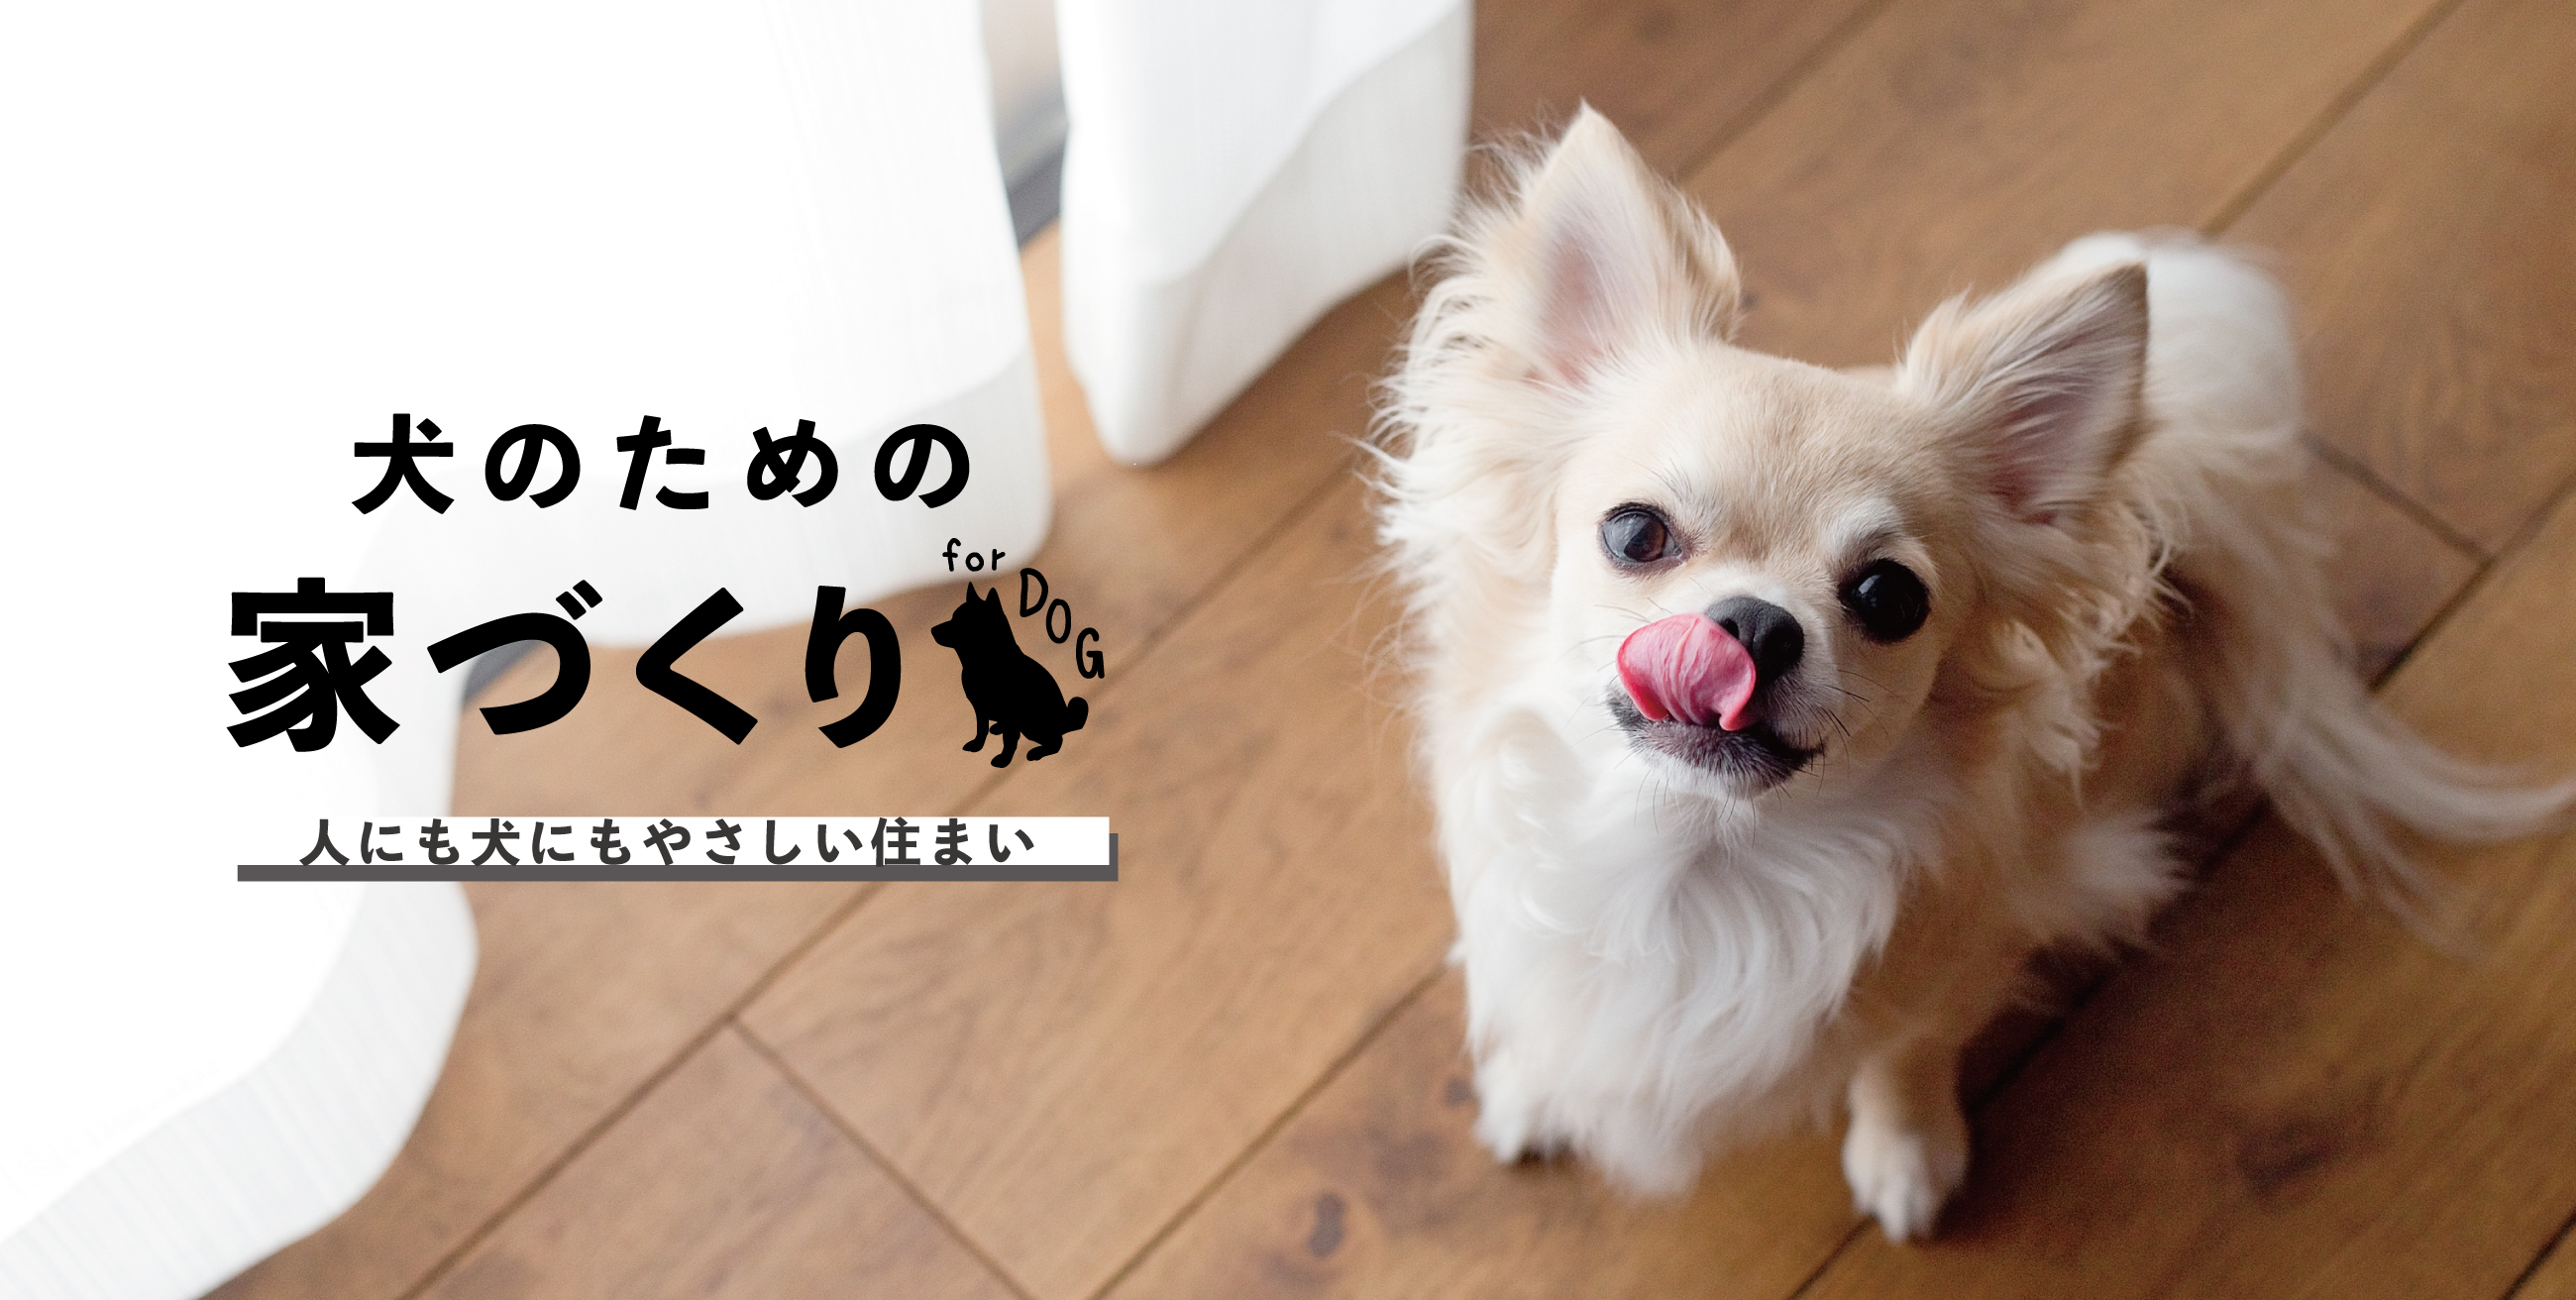 犬のための家づくり 人にも犬にもやさしい住まい マンションリフォーム リノベーションのサンリフォーム 大阪 神戸 西宮 吹田 京都 横浜 東京